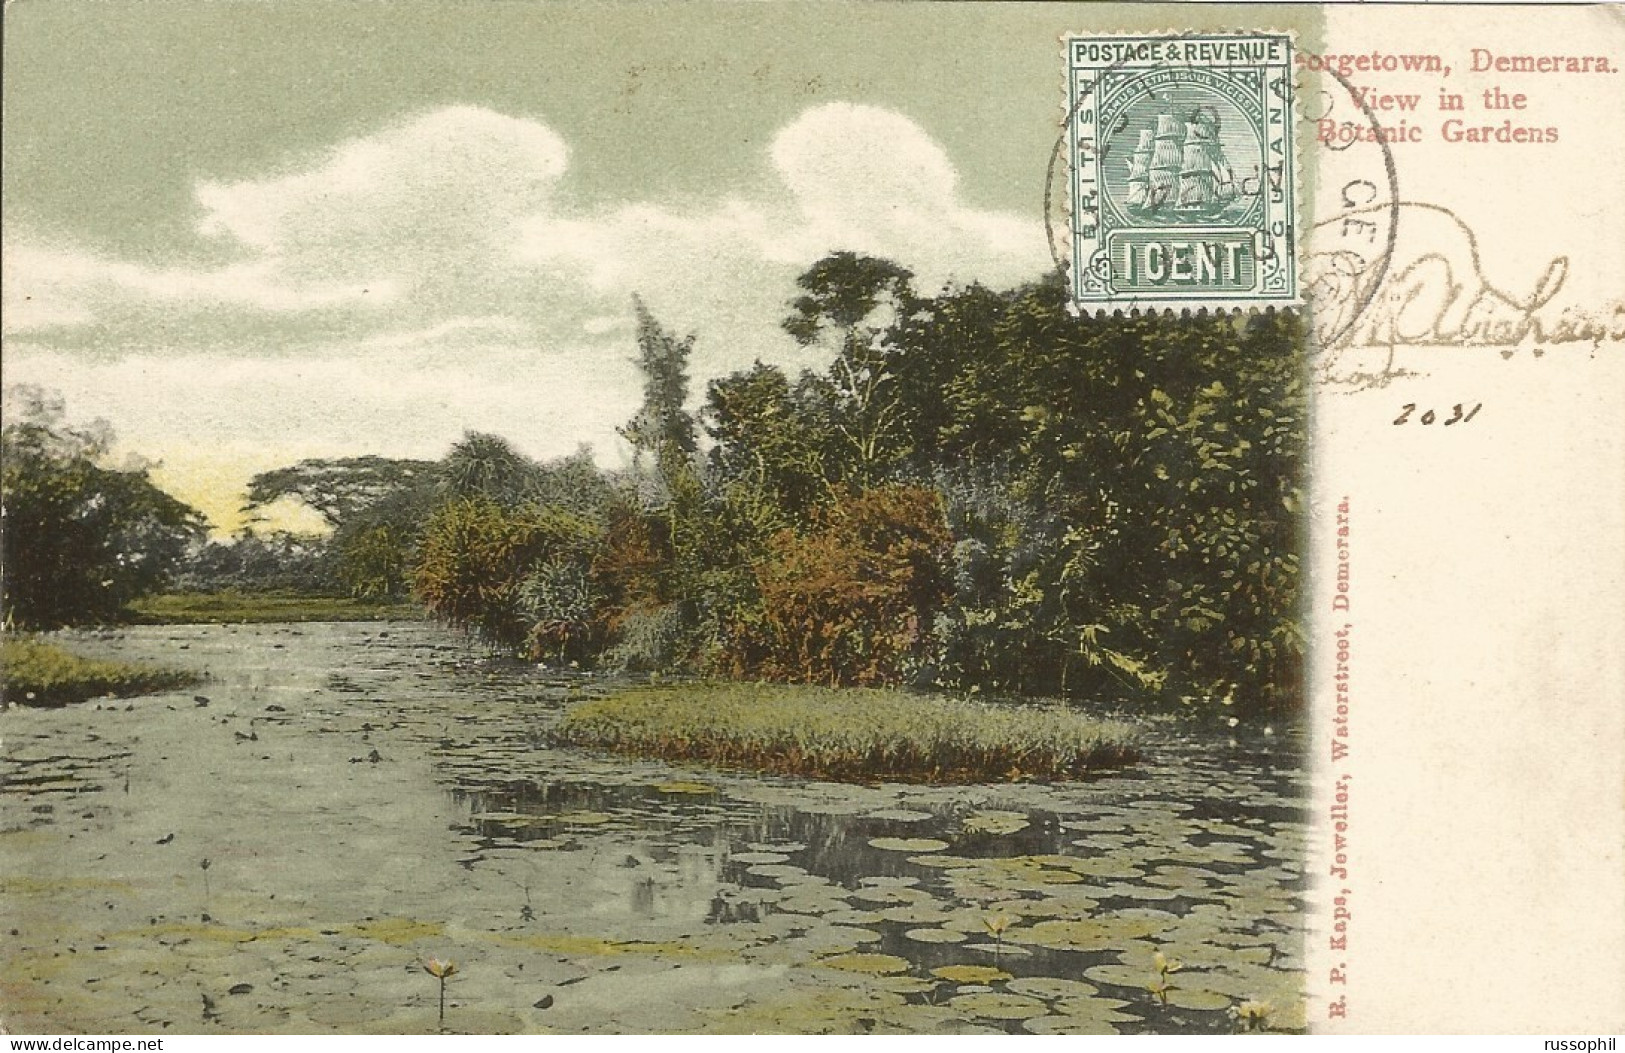 GUYANA - BRITISH GUYANA - GEORGETOWN, DEMERARA. VIEW IN THE BOTANIC GARDENS - ED. KAPS - 1906 - Guyana (voorheen Brits Guyana)